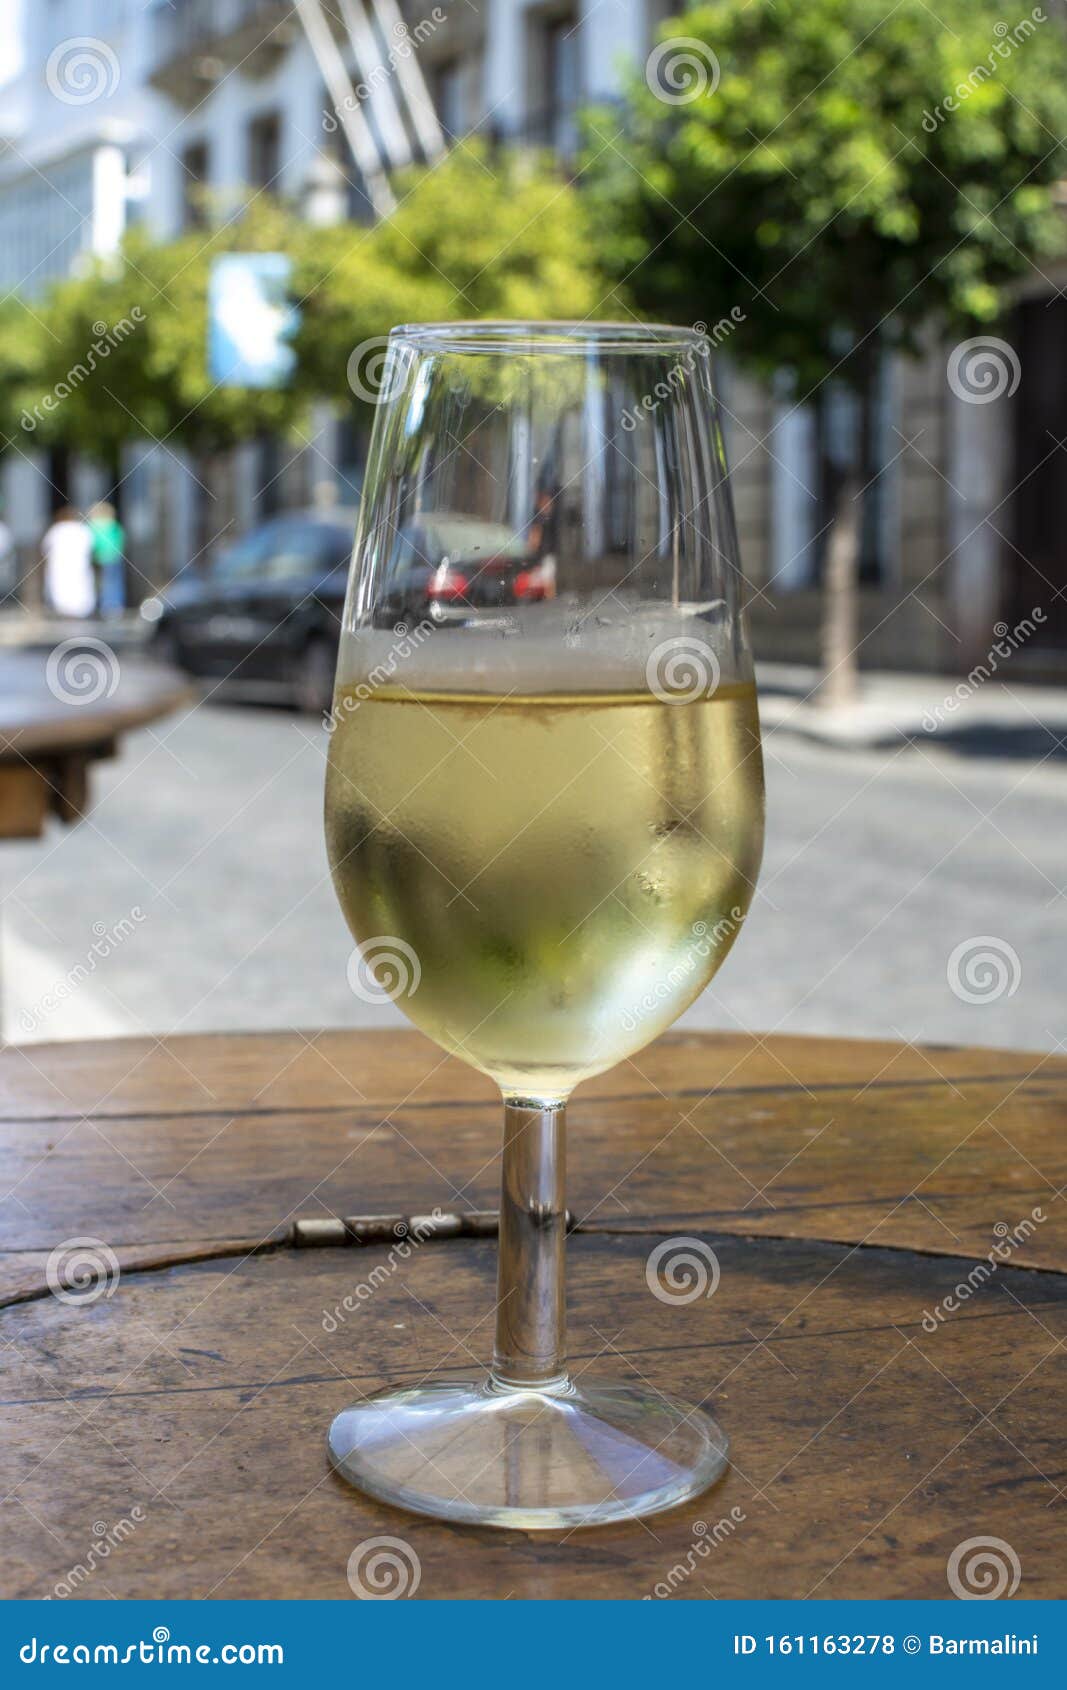 sherry wine tasting, dry fino, manzanilla or palomino jerez fortified wine in glasses, jerez de la frontera, andalusia, spain